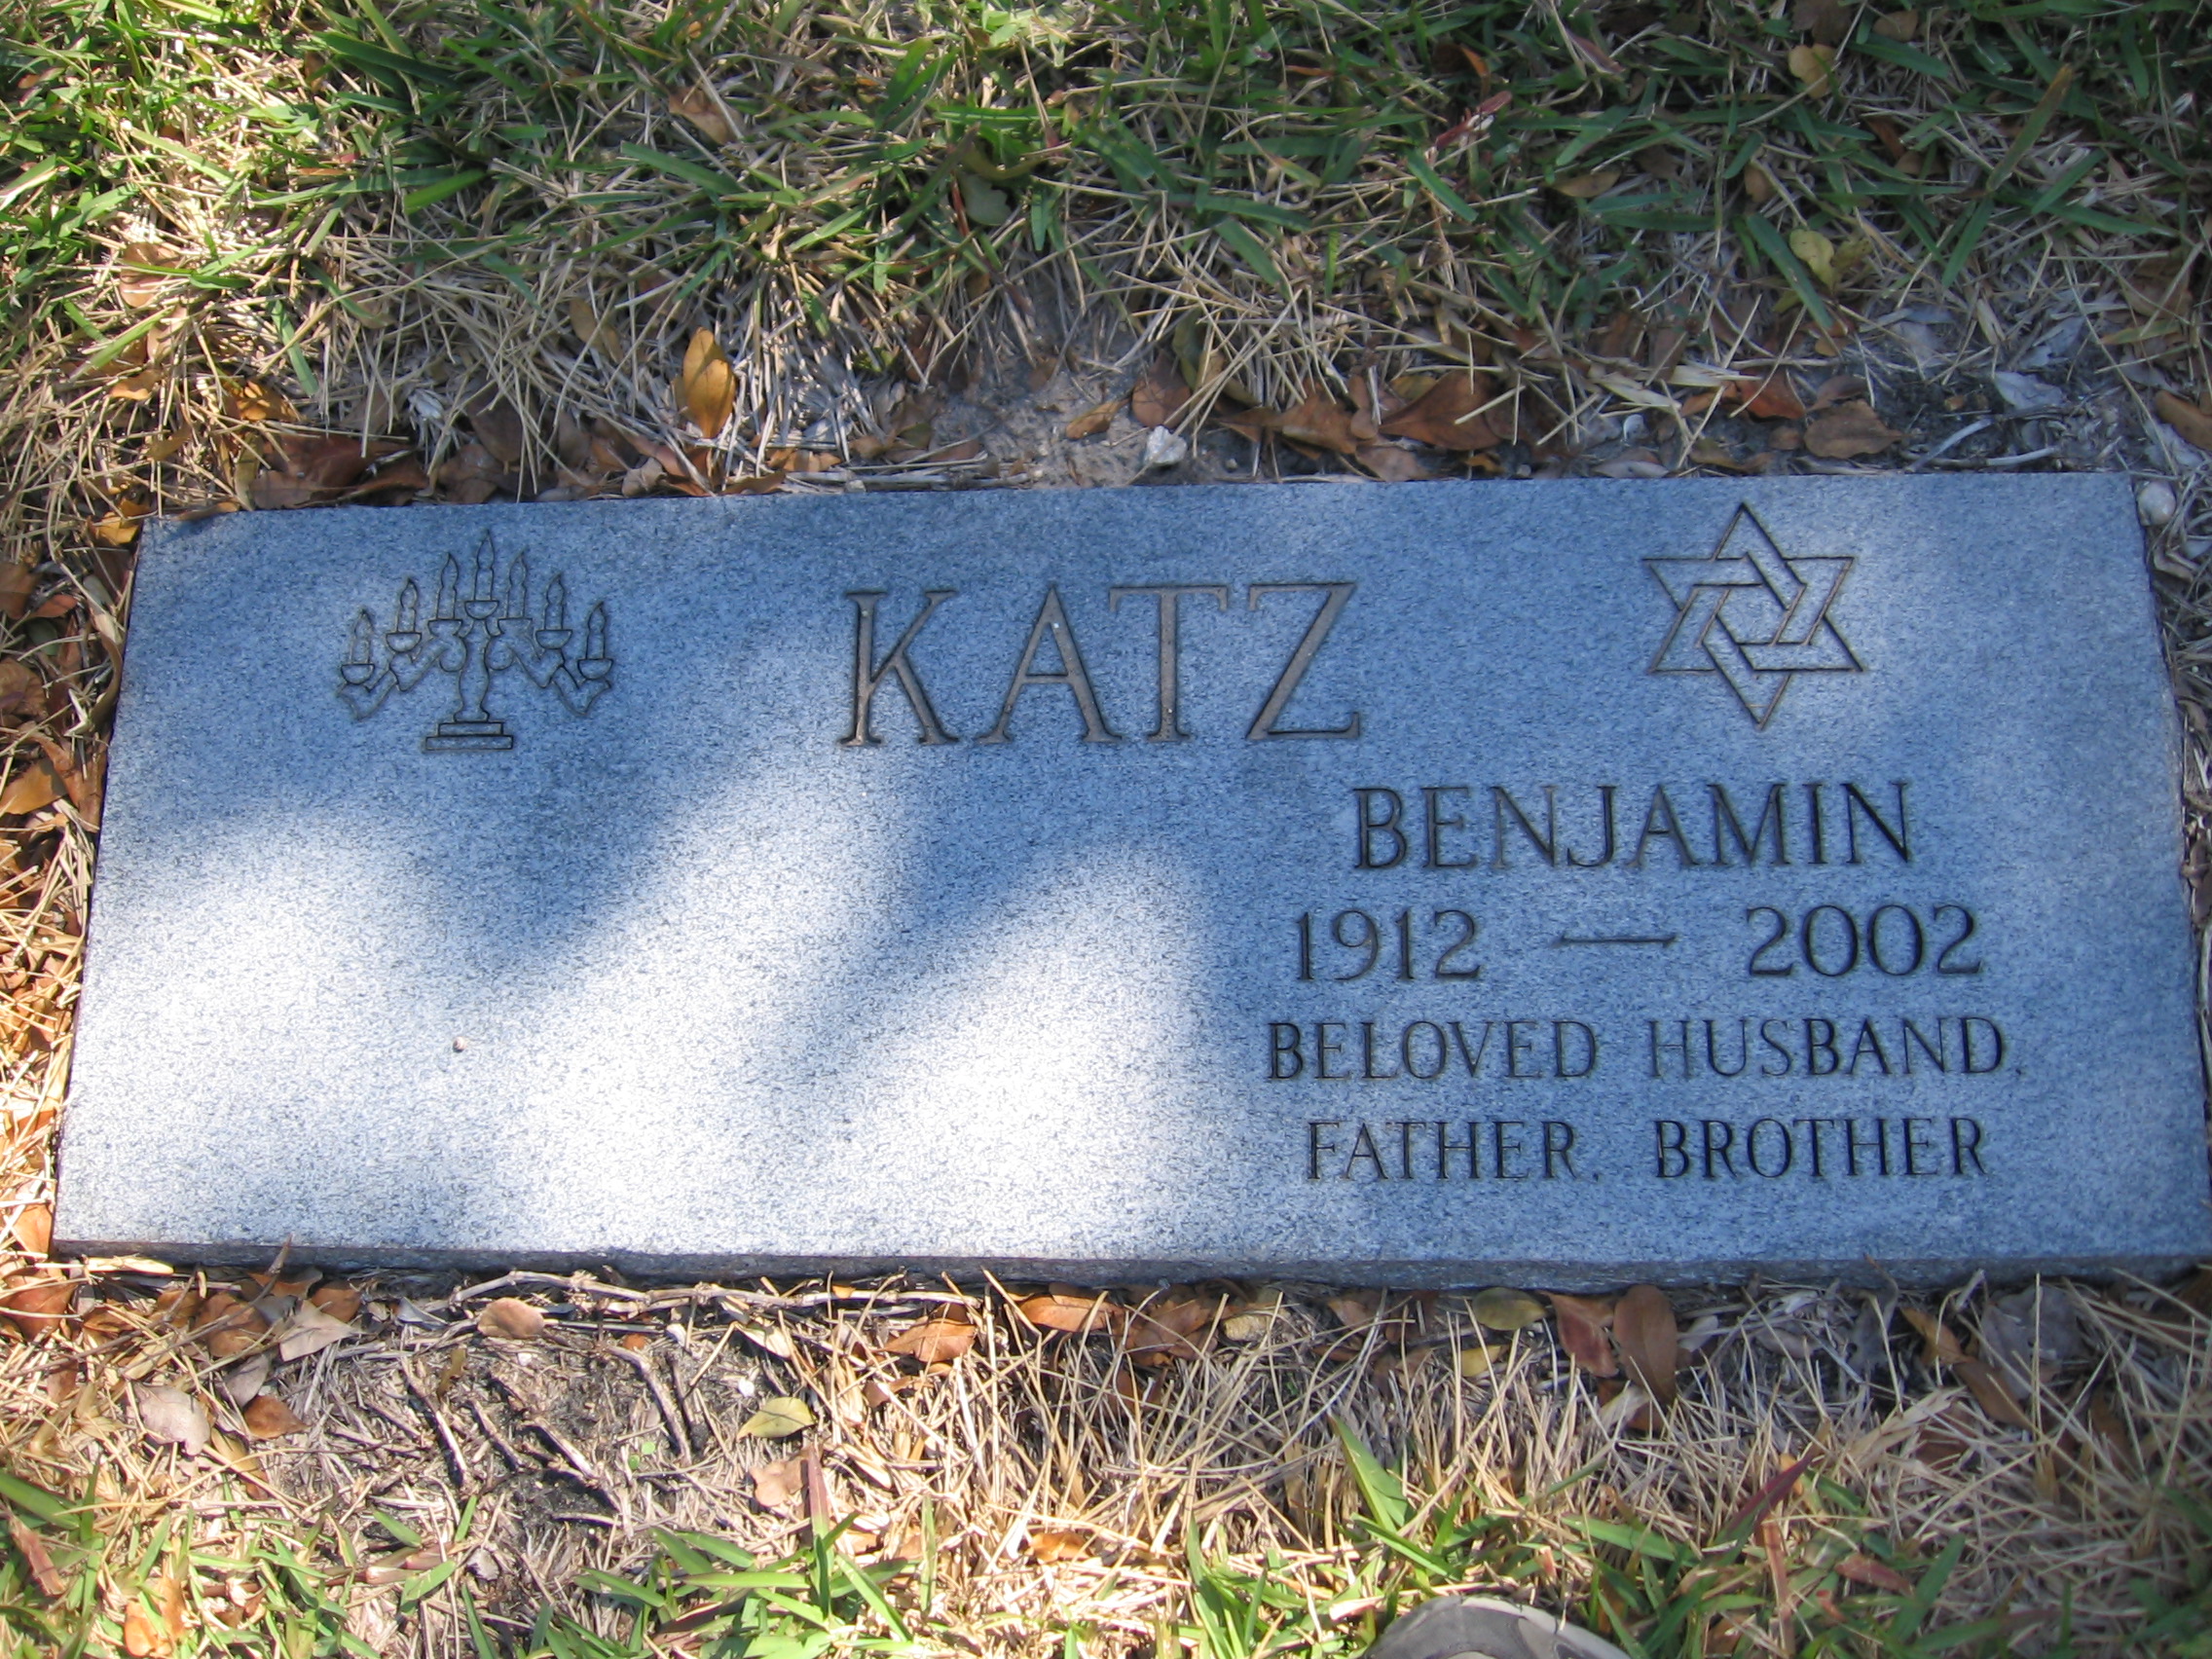 Benjamin Katz